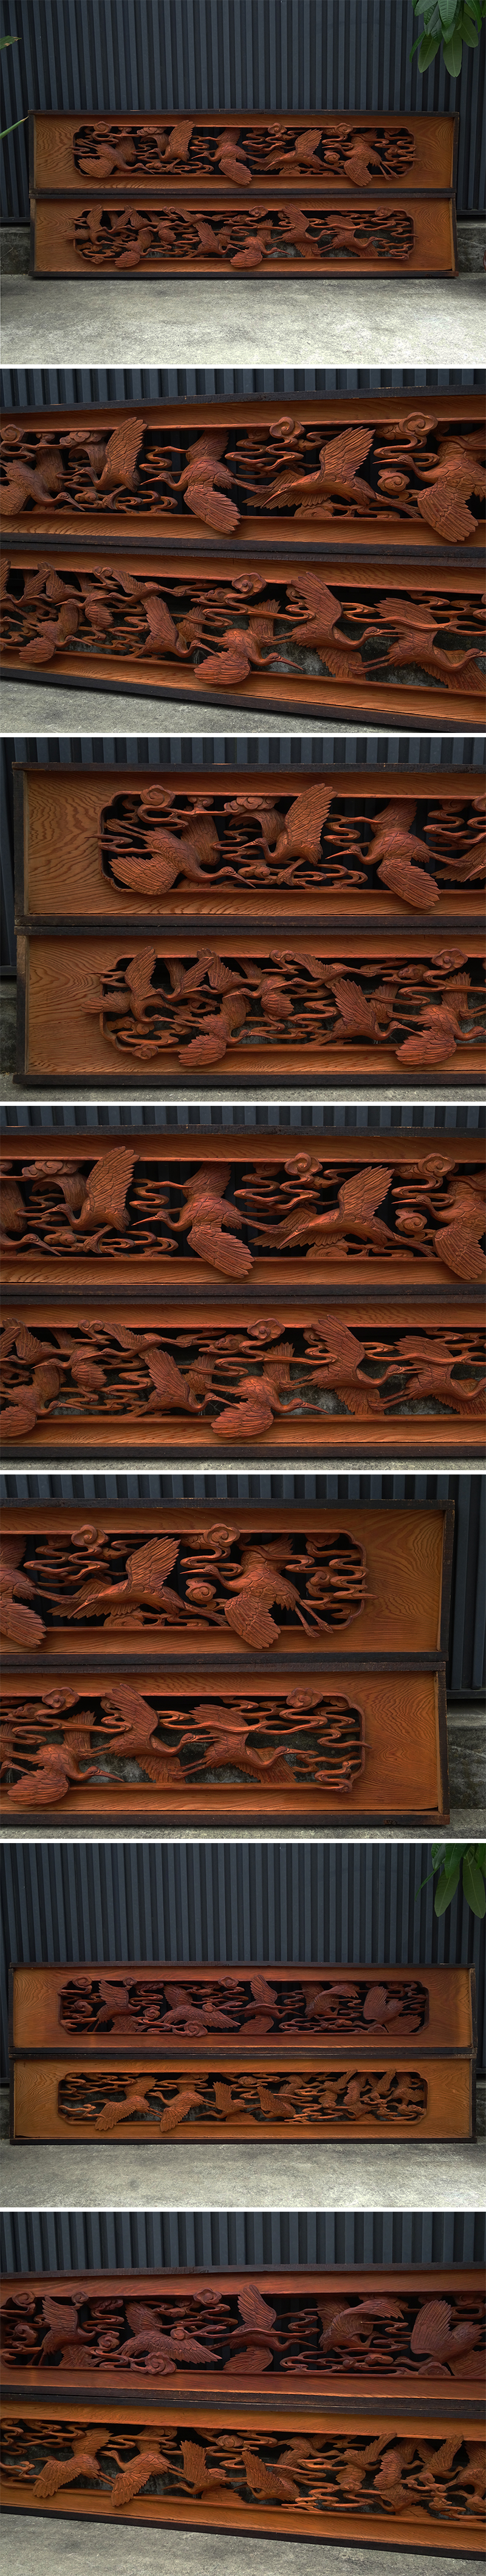 侍】 名品 時代 井波彫刻 細密木彫 雲鶴図 欄間 一対 日本家具 和家具 